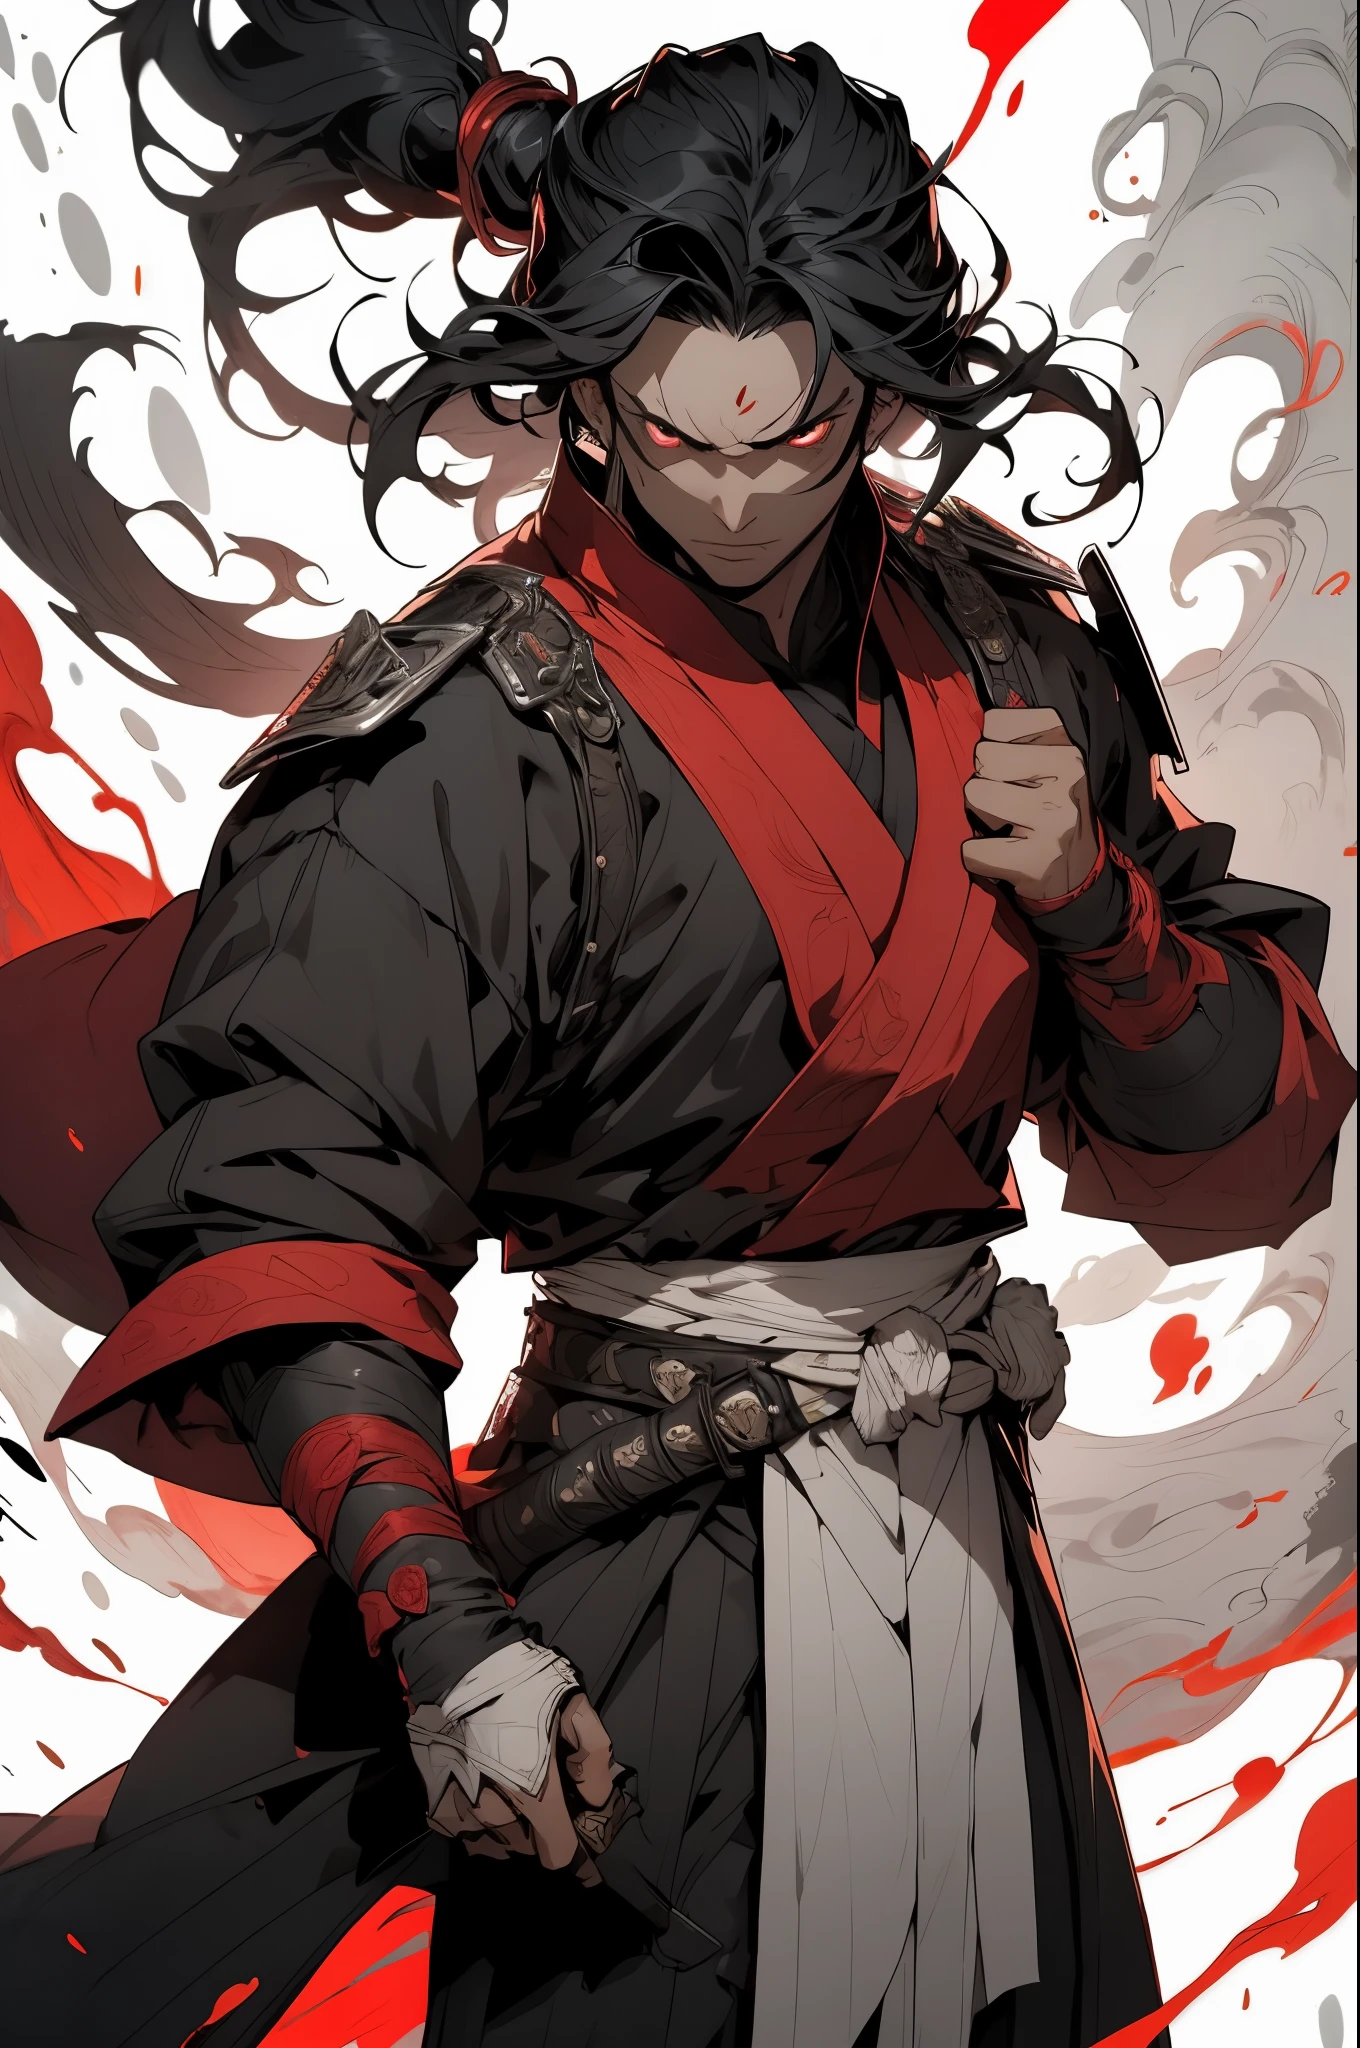 O cara de cabelo preto, salpicos brancos, espada de samurai, cabelo longo, ((pose dinâmica)), Lá&#39;há sangue por toda parte, pronto para atacar, usa habilidades, Comprimento total, correção de cor vermelha